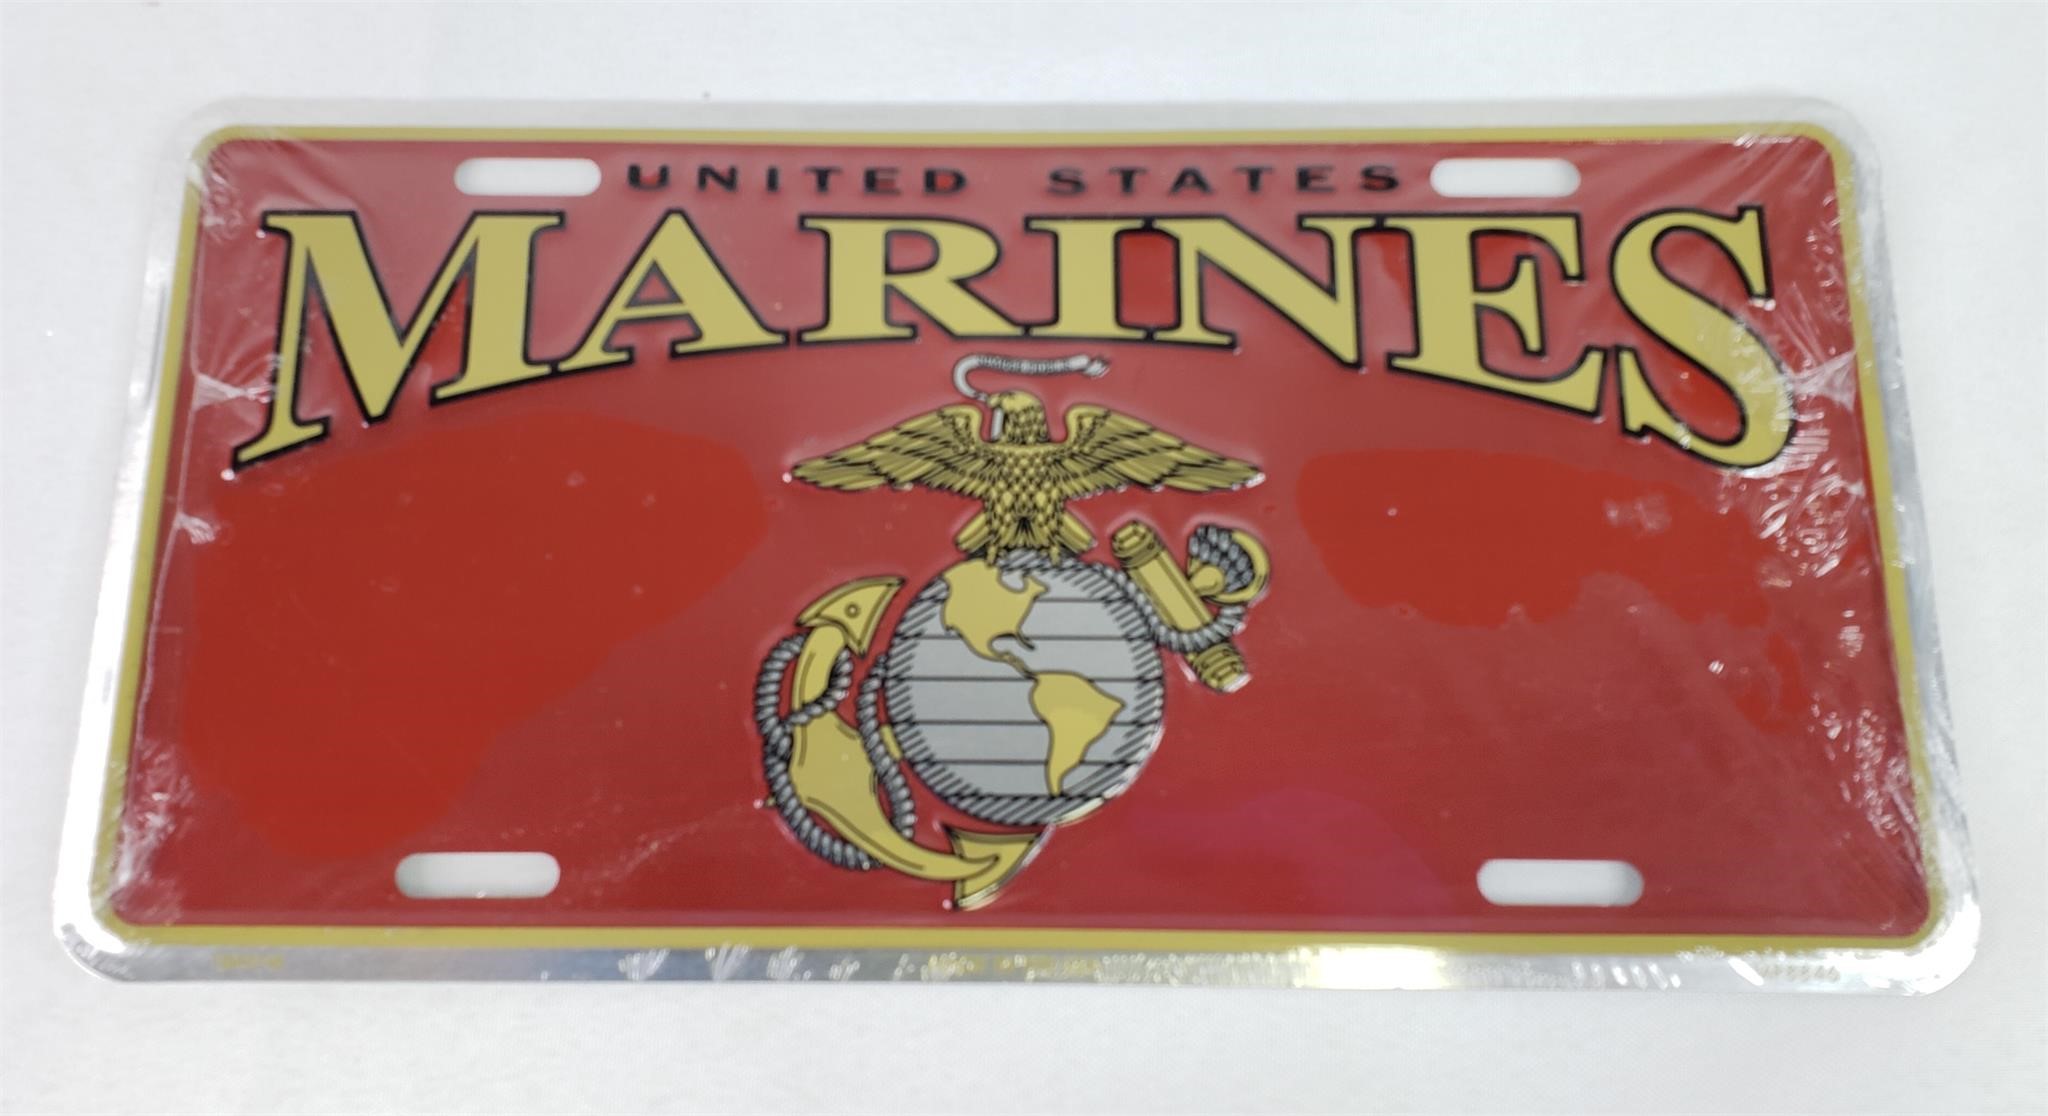 U.S. Marines Metal License Plate